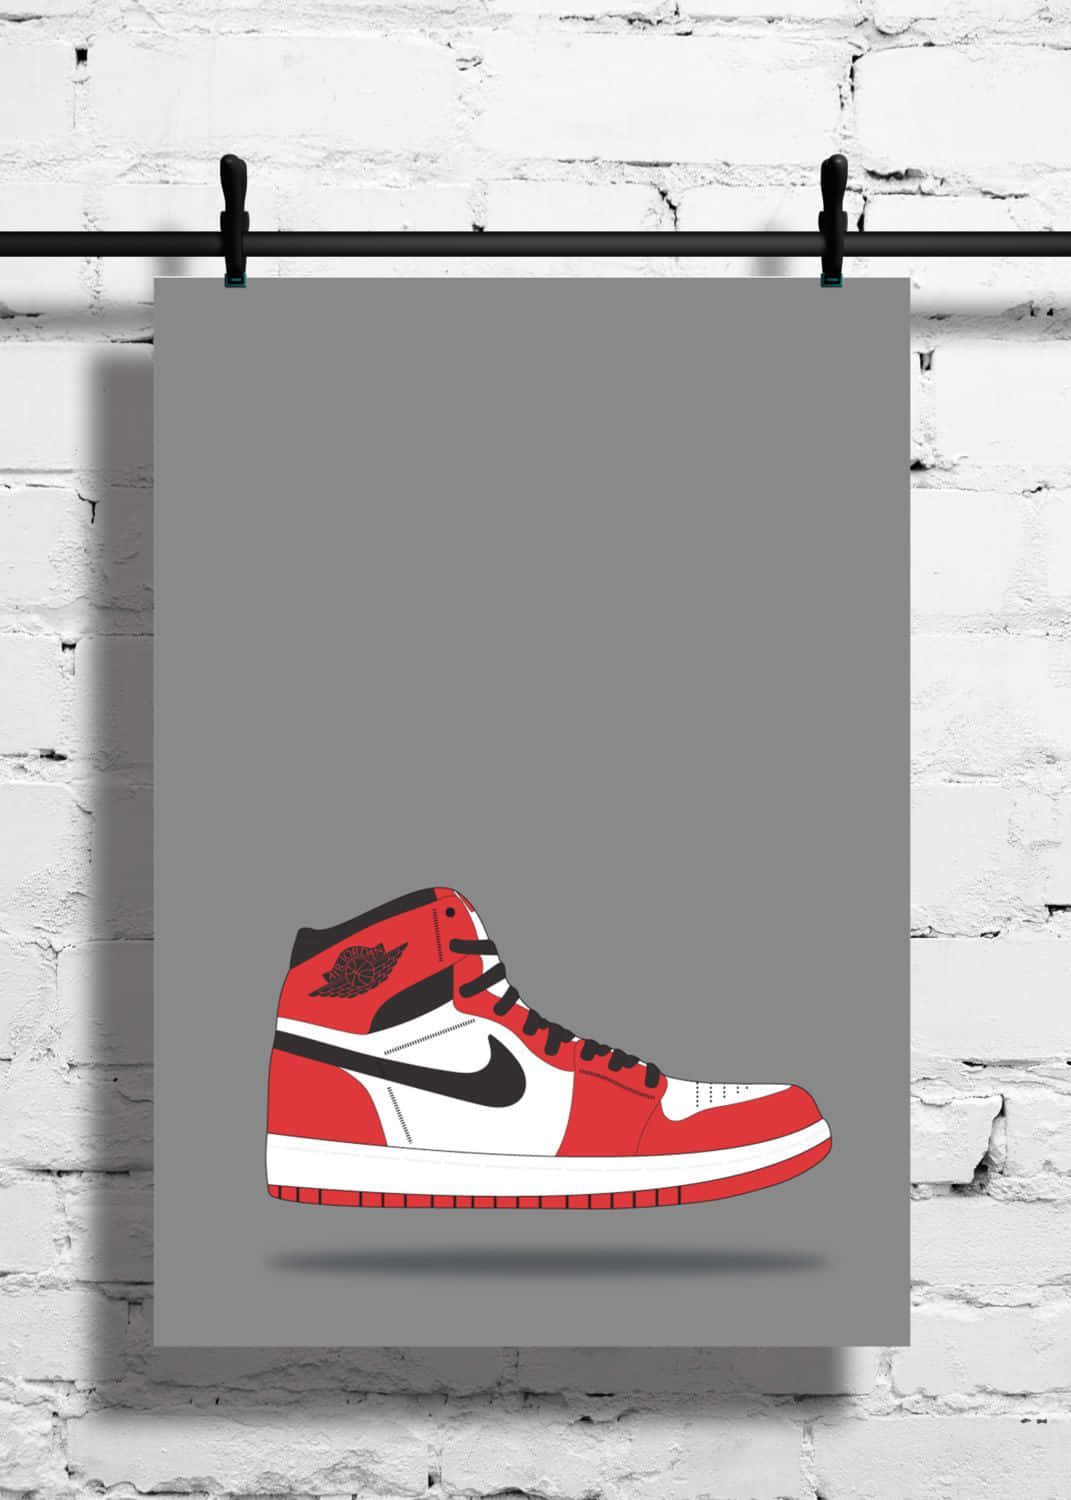 Rotejordan Schuhe Illustrationen Wallpaper